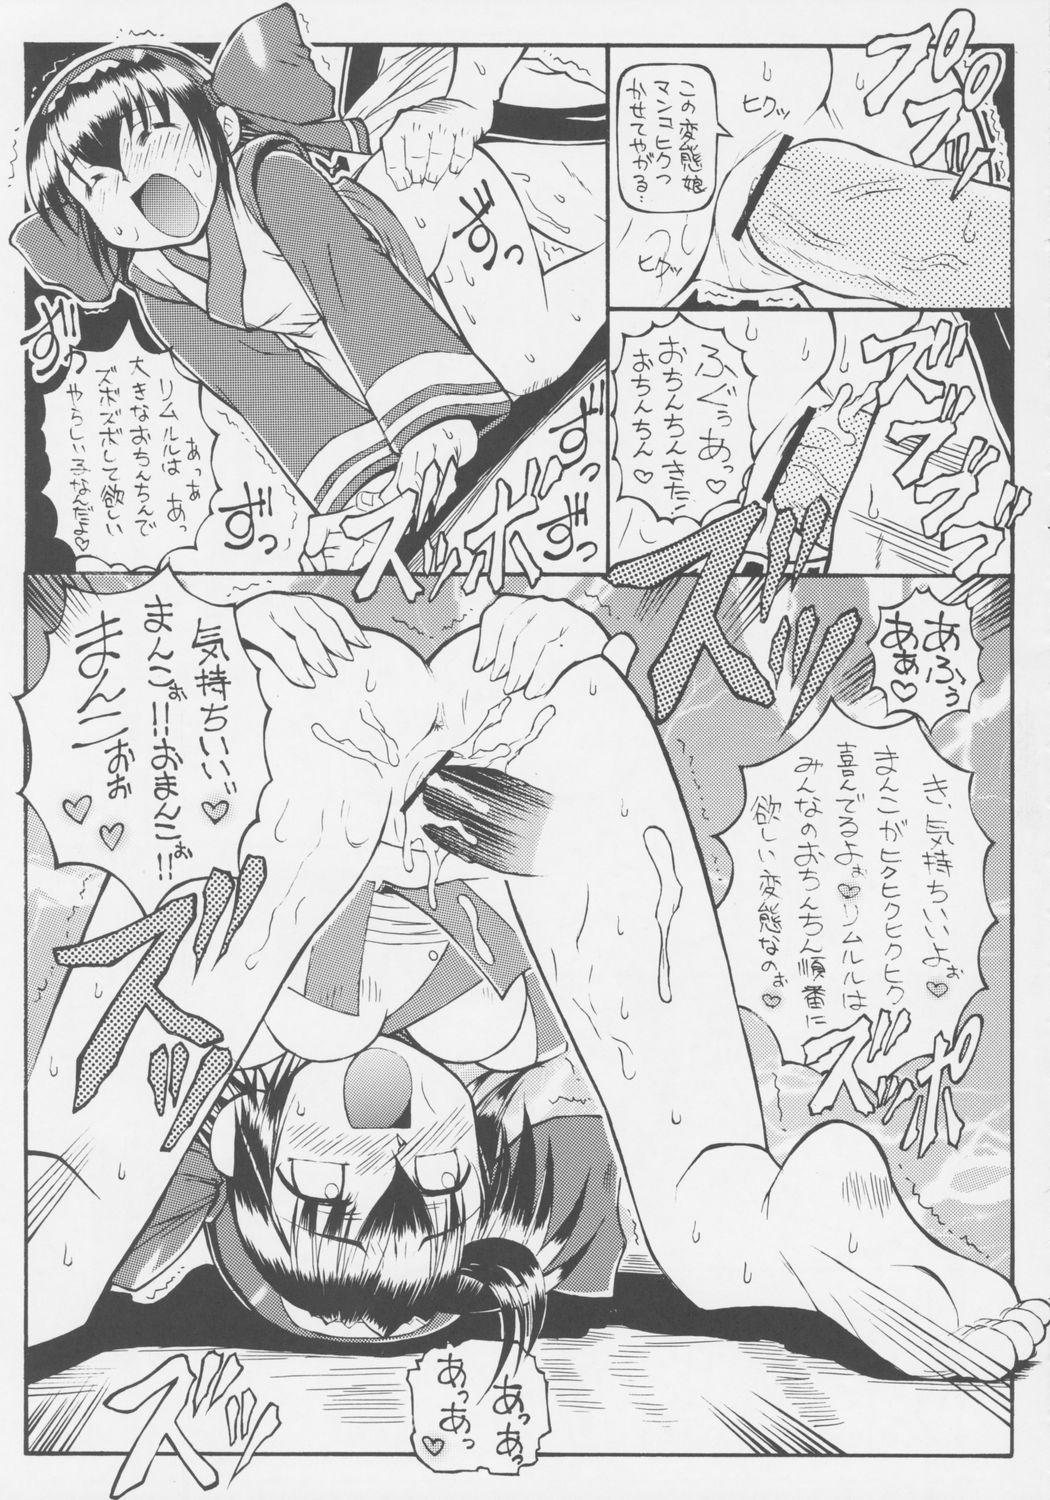 Jap Zero Ni Shiki - Samurai spirits Butt - Page 8